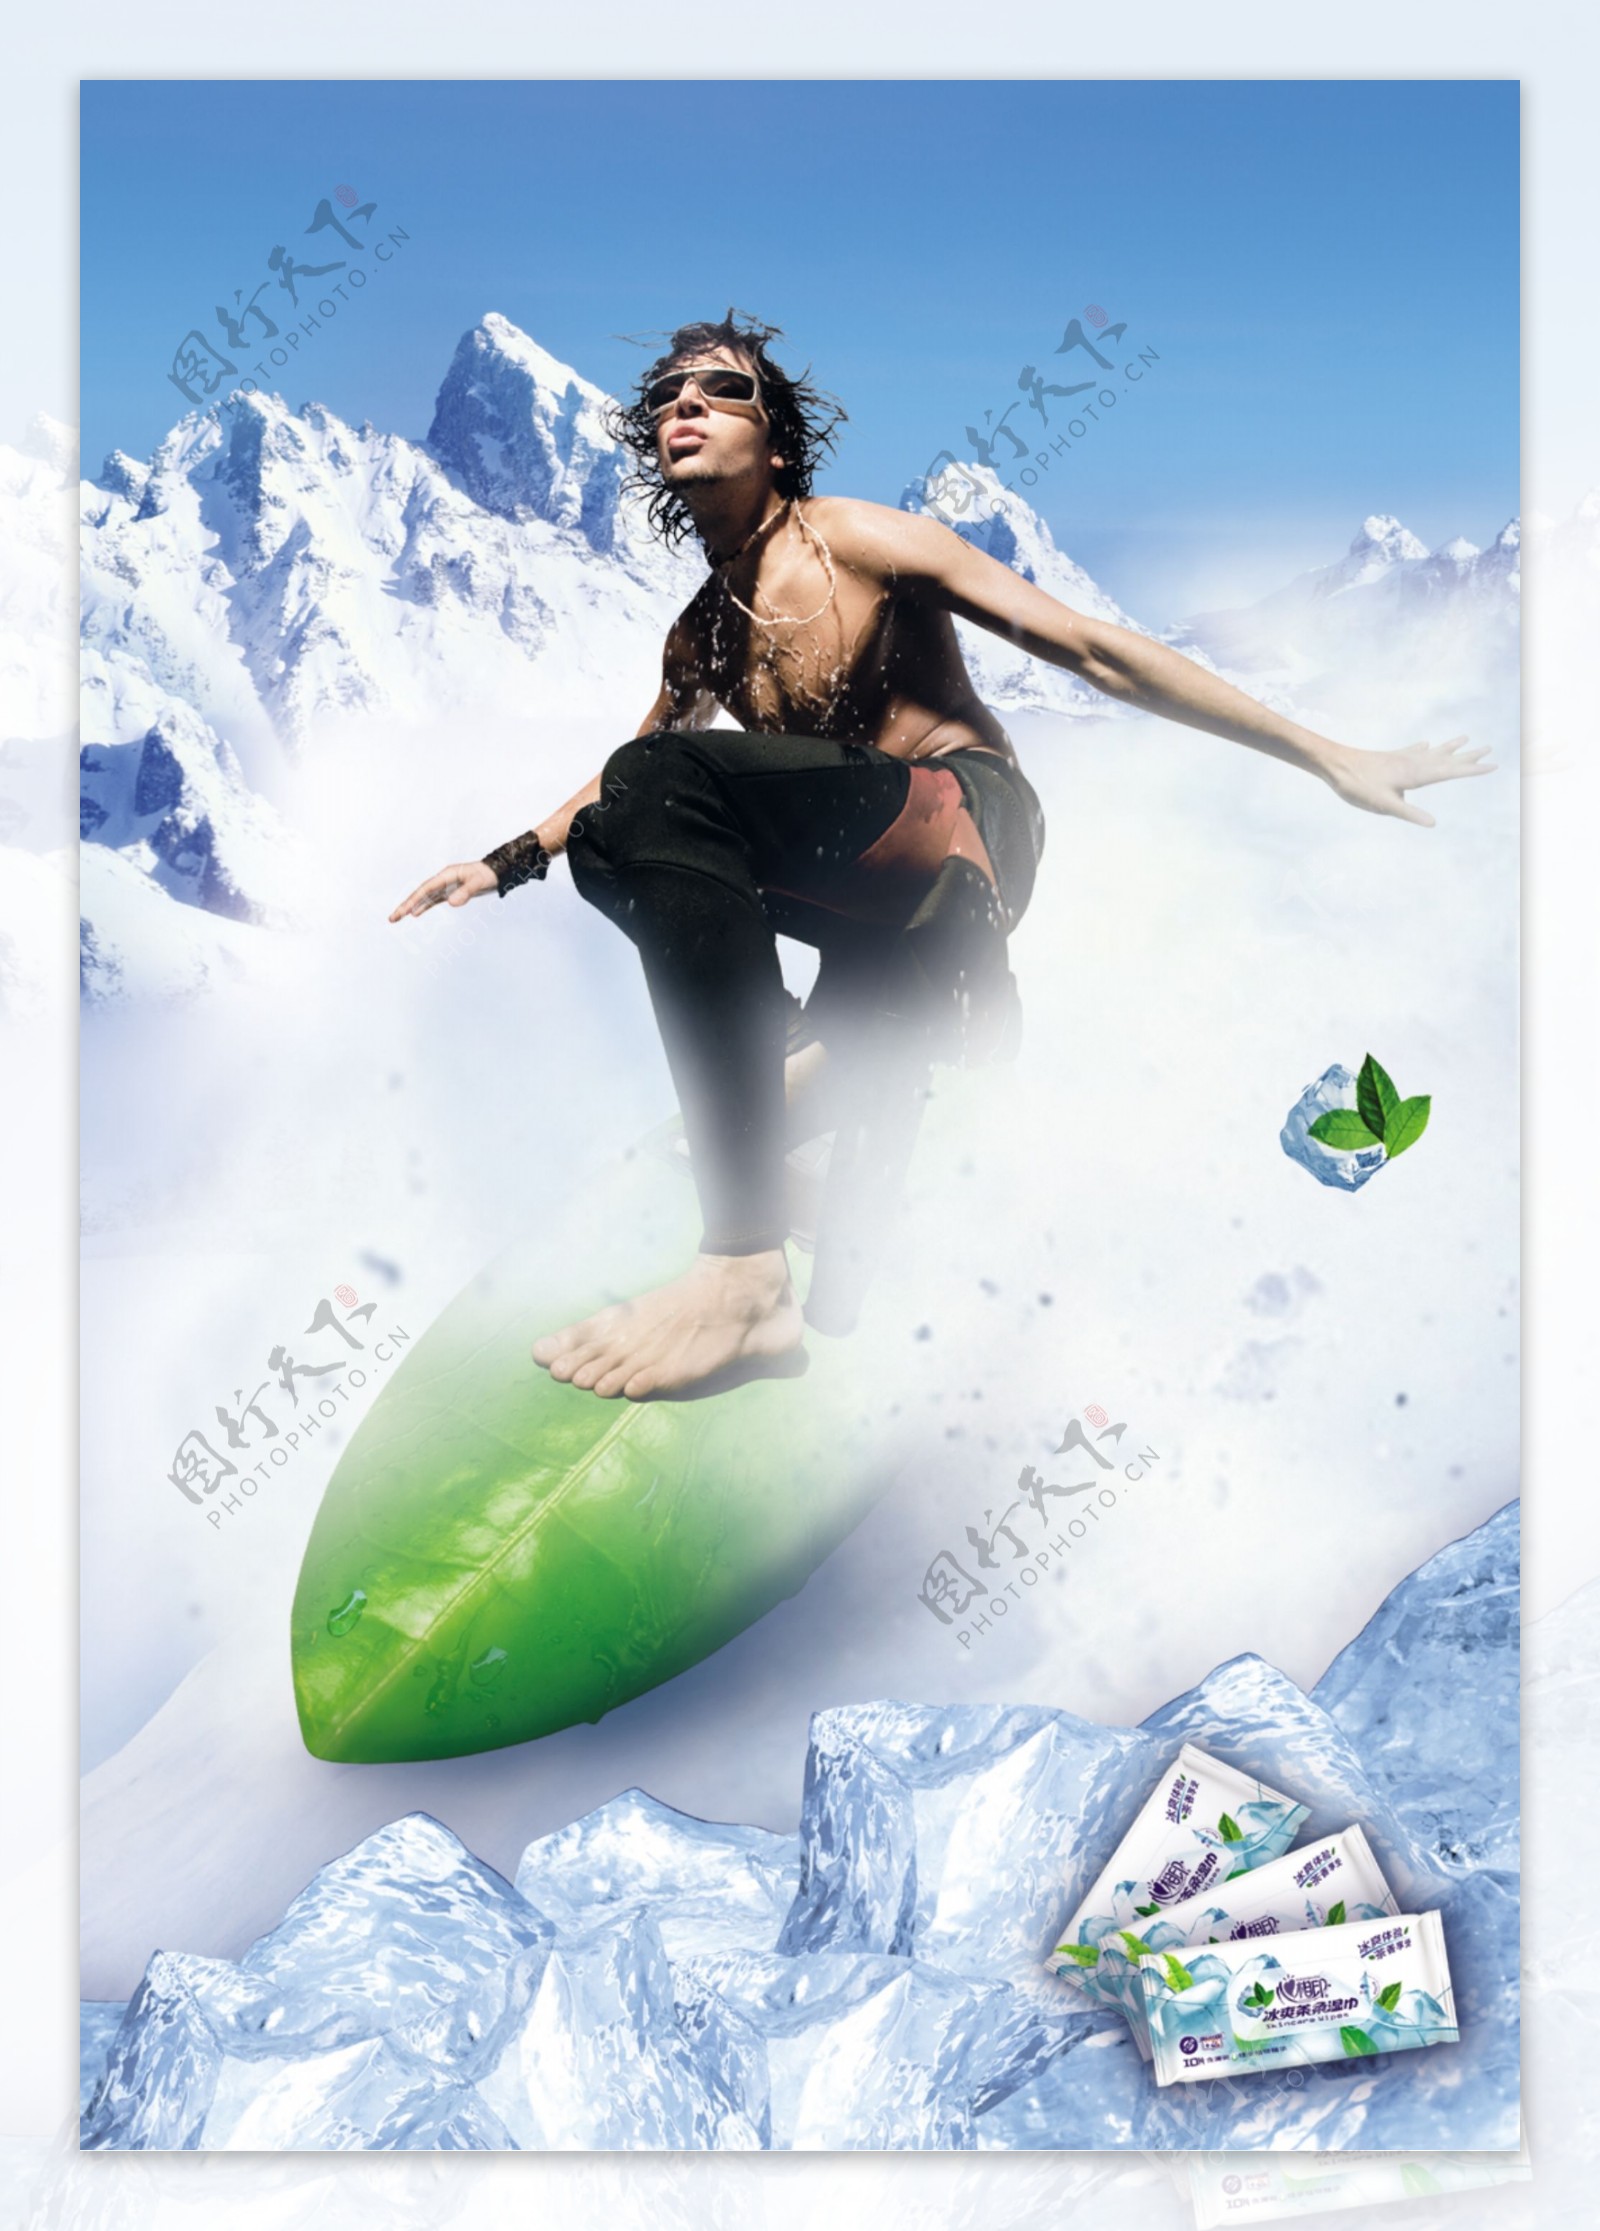 心相印纸巾系列广告之雪山滑冰图片